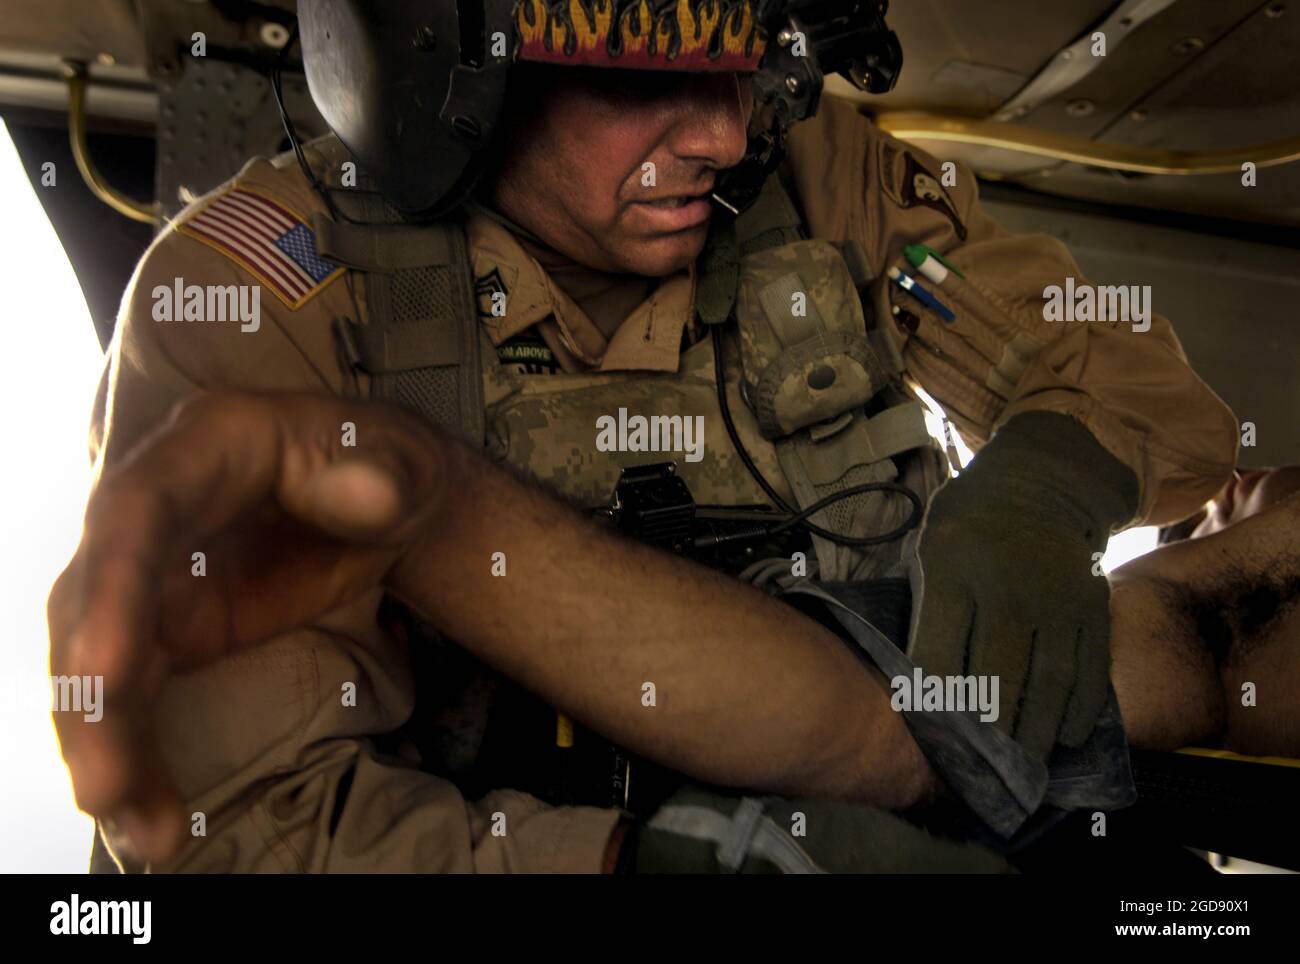 US Army (USA) staff Sergeant (SSG) David Edens, Aerial Combat Medic, 1st Forward Support Medical Team (FSMT), avvolge un monitor della pressione sanguigna intorno a un braccio ferito del soldato iracheno durante una missione di evacuazione medica (MEDIVAC) vicino a Tall Afar, Iraq (IRQ). USA SSG Edens schierato dalla 542nd Medical Company (Air Ambulance) (MED CO (AA)), Fort Campbell, Kentucky (KY), a sostegno dell'operazione DI LIBERTÀ IRACHENA. (FOTO USAF DI SSGT JACOB N. BAILEY 060717-F-5964B-078) Foto Stock